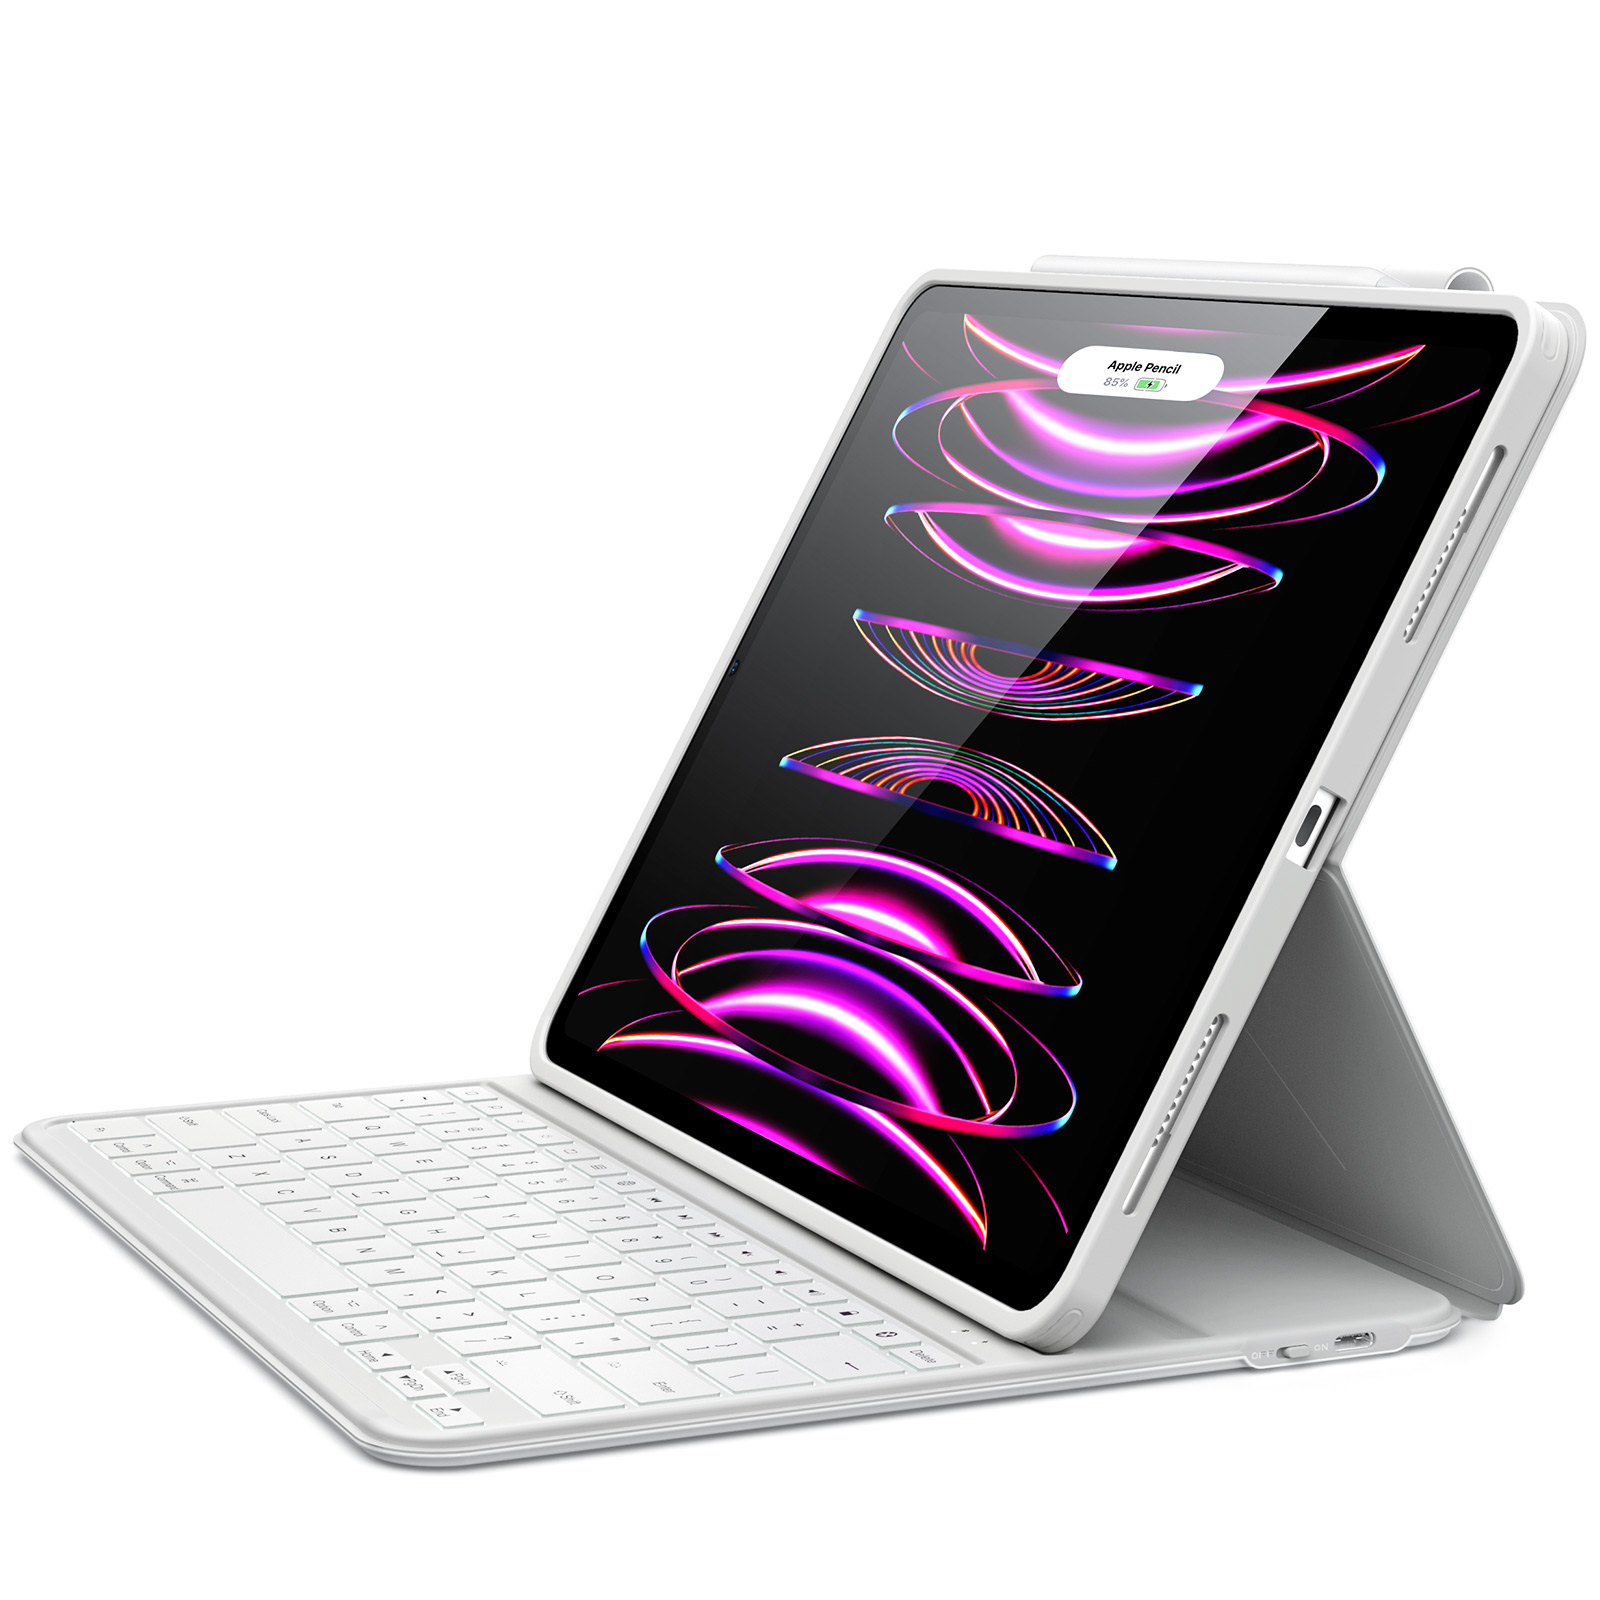 iPad Pro 12.9 Ascend Keyboard Case Lite